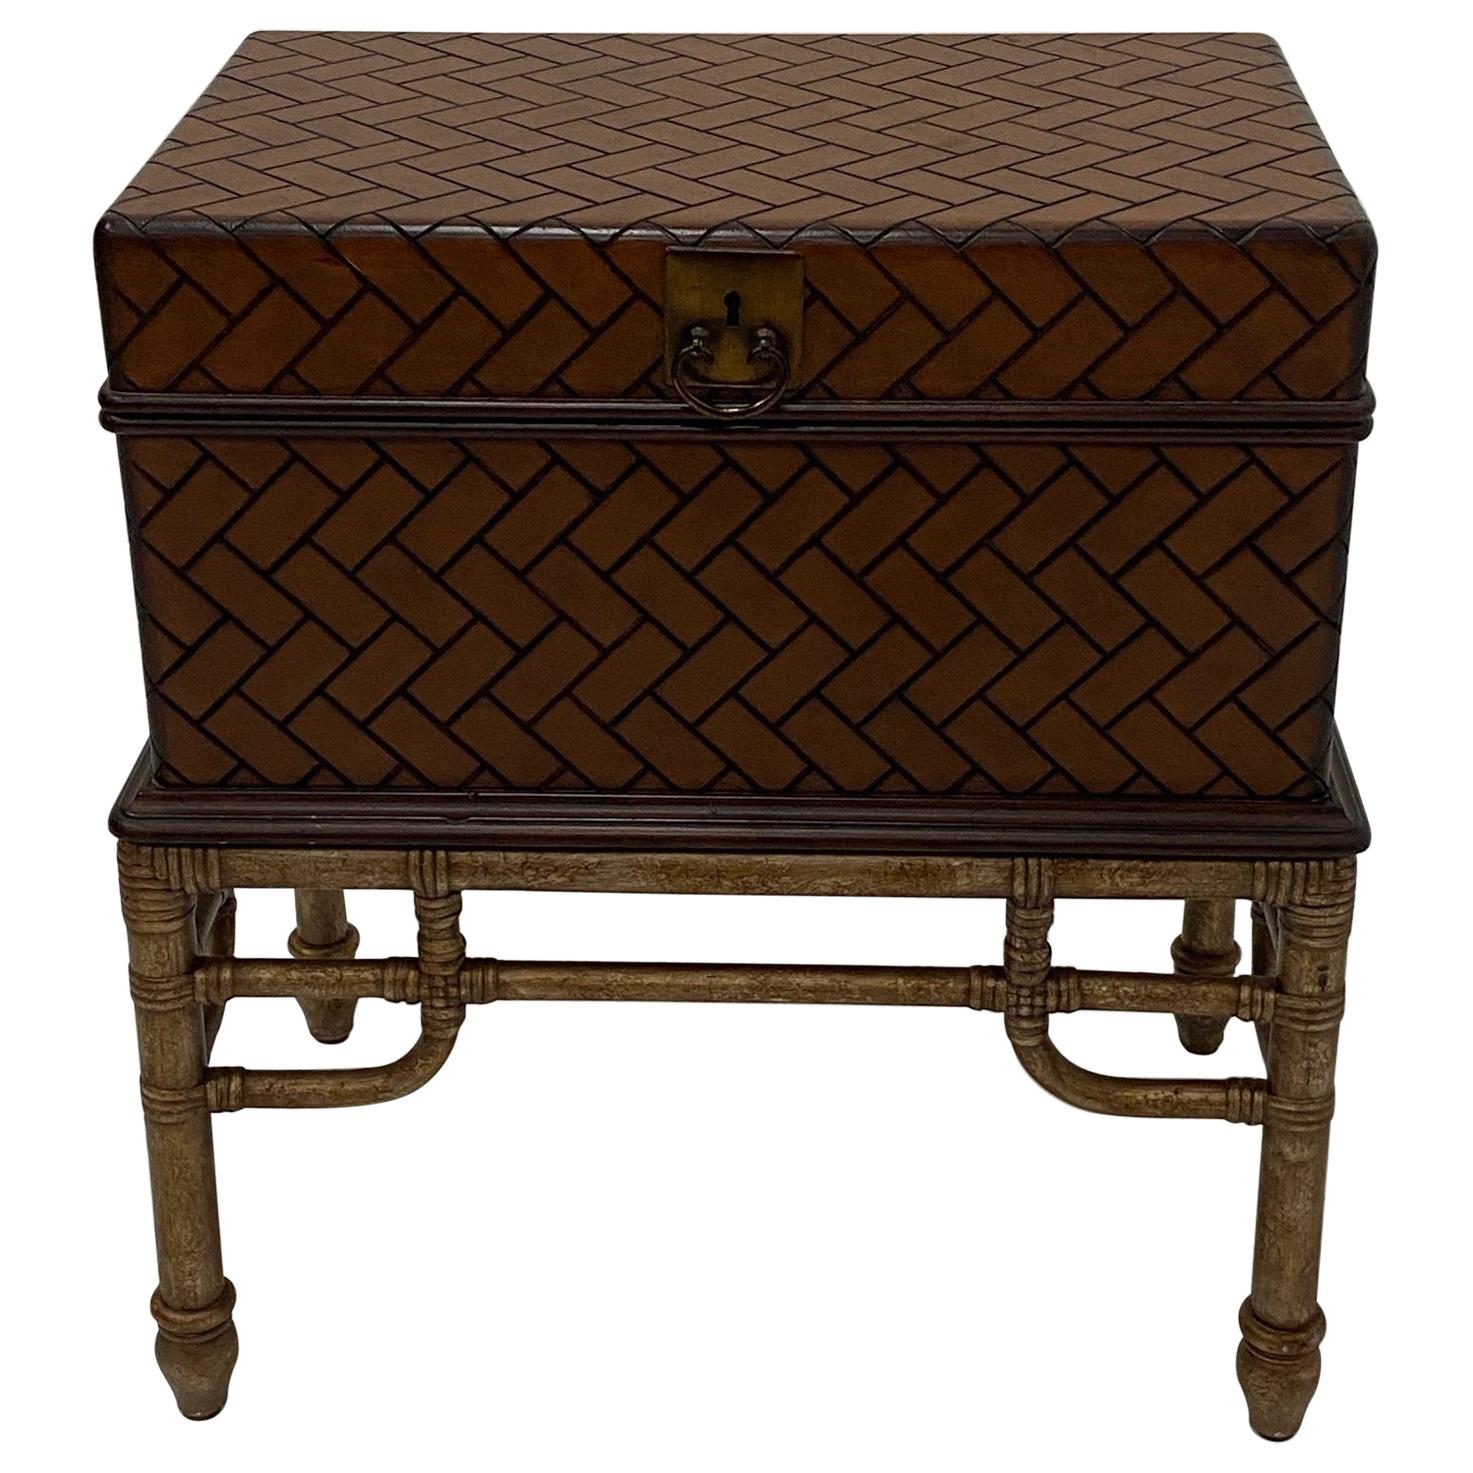 Magnifique table d'extrémité avec boîte en bois tressé et support en bambou